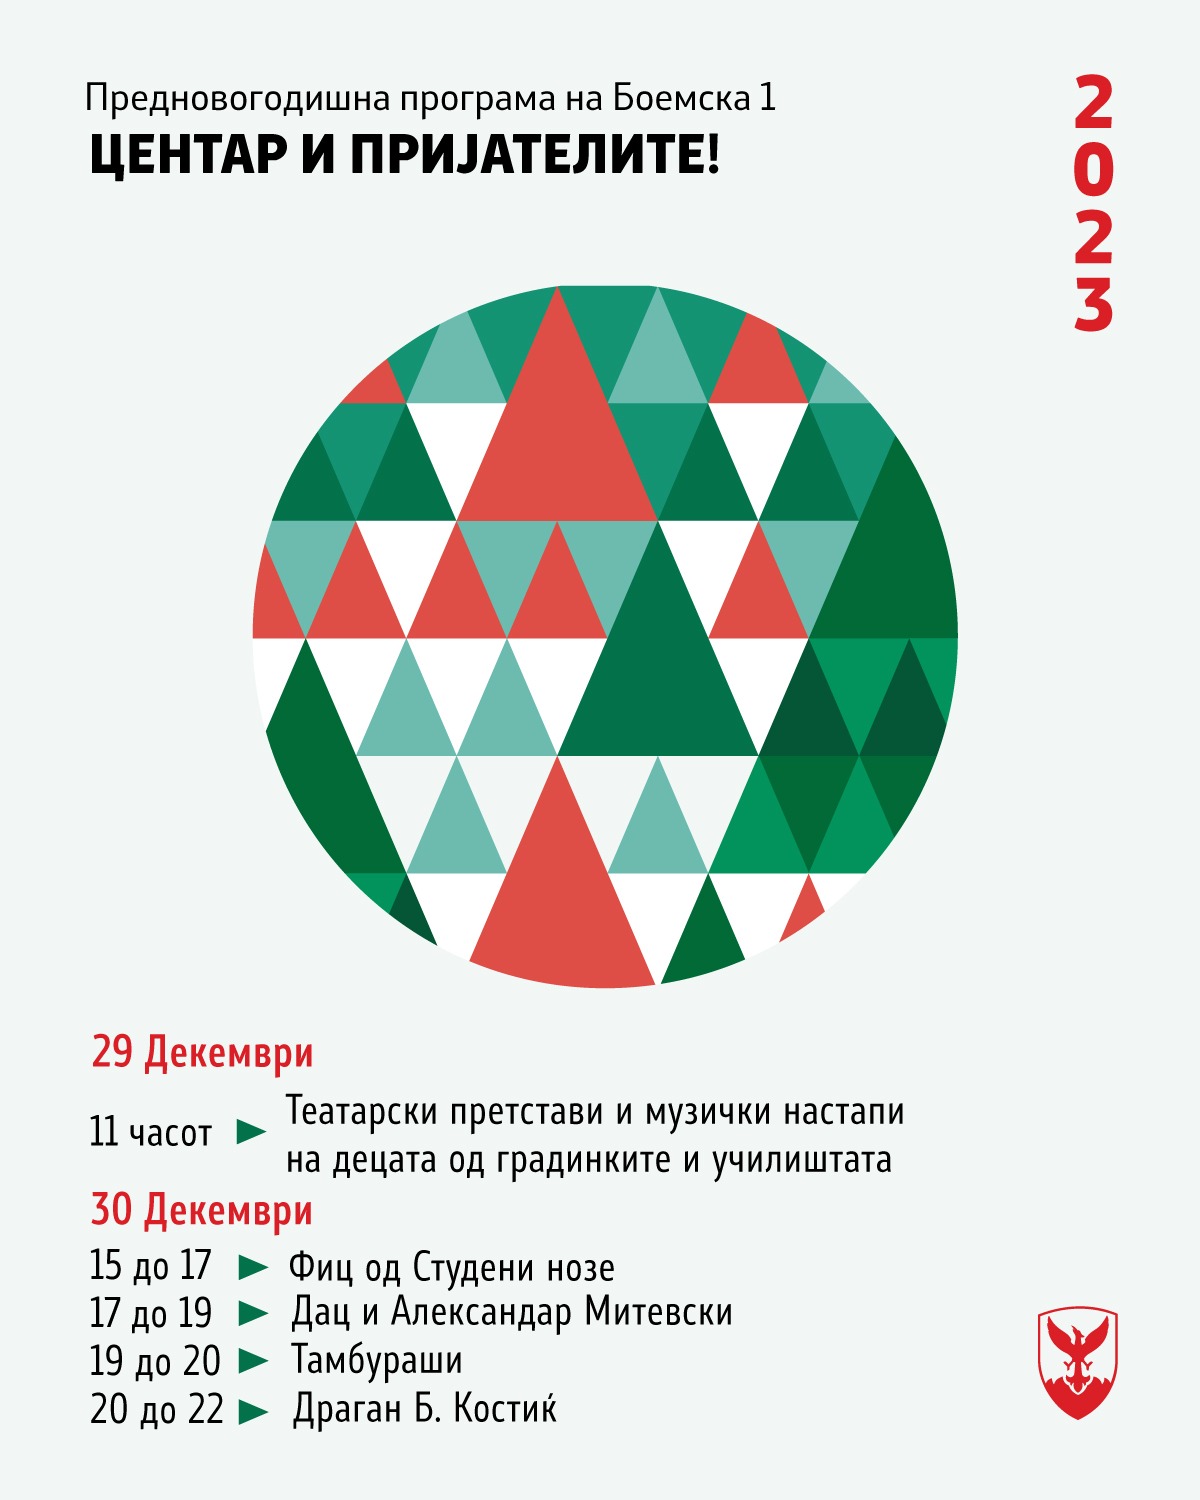 Герасимовски: 3000 пакетчиња за децата и предновогодишна забава на „Боемска 1“